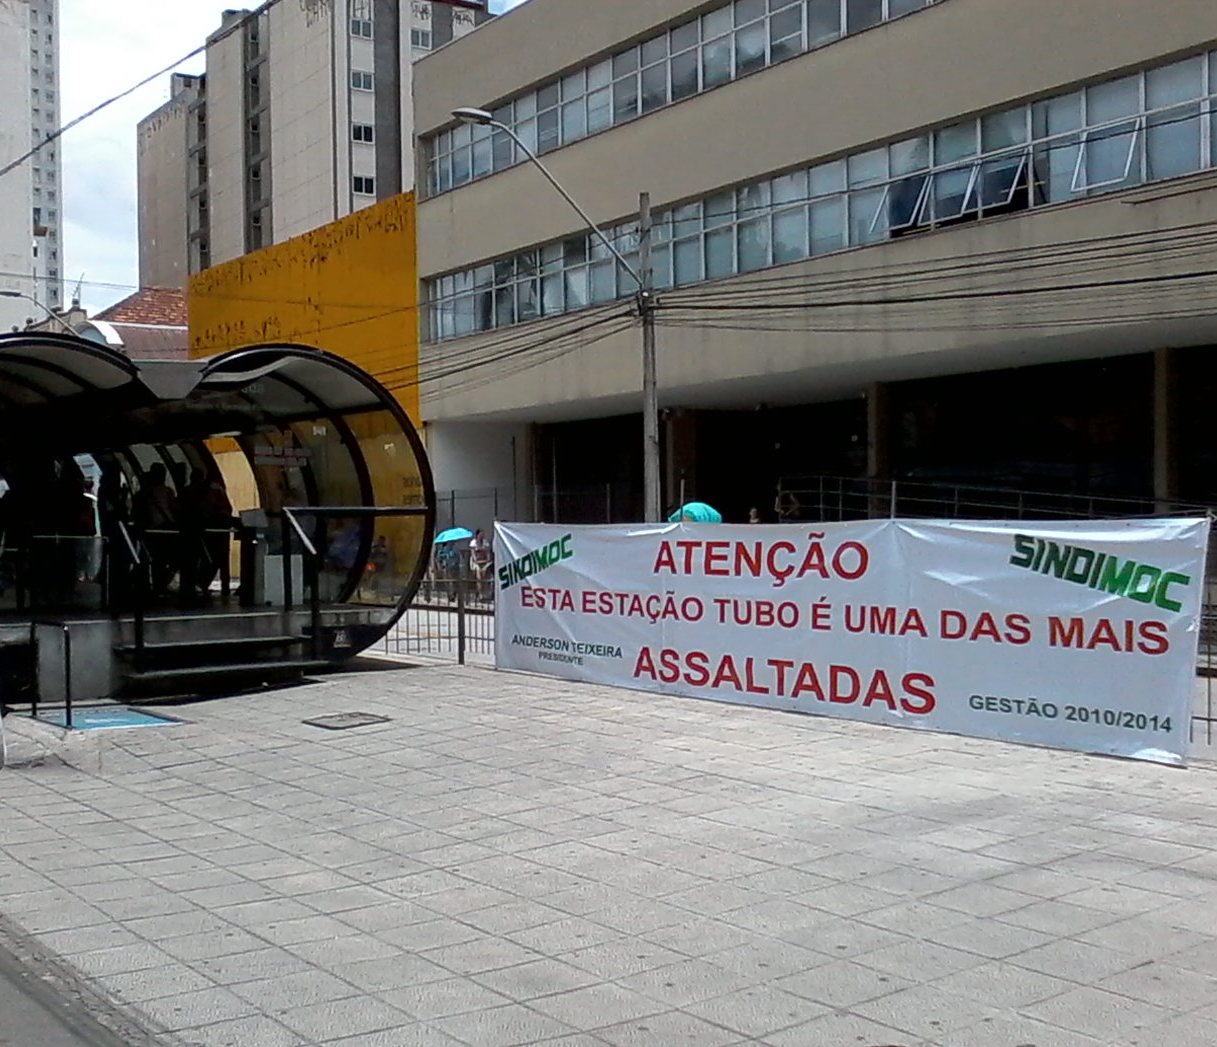 Protesto promovido pelo Sindimoc em estação-tubo chama atenção da grande mídia da capital